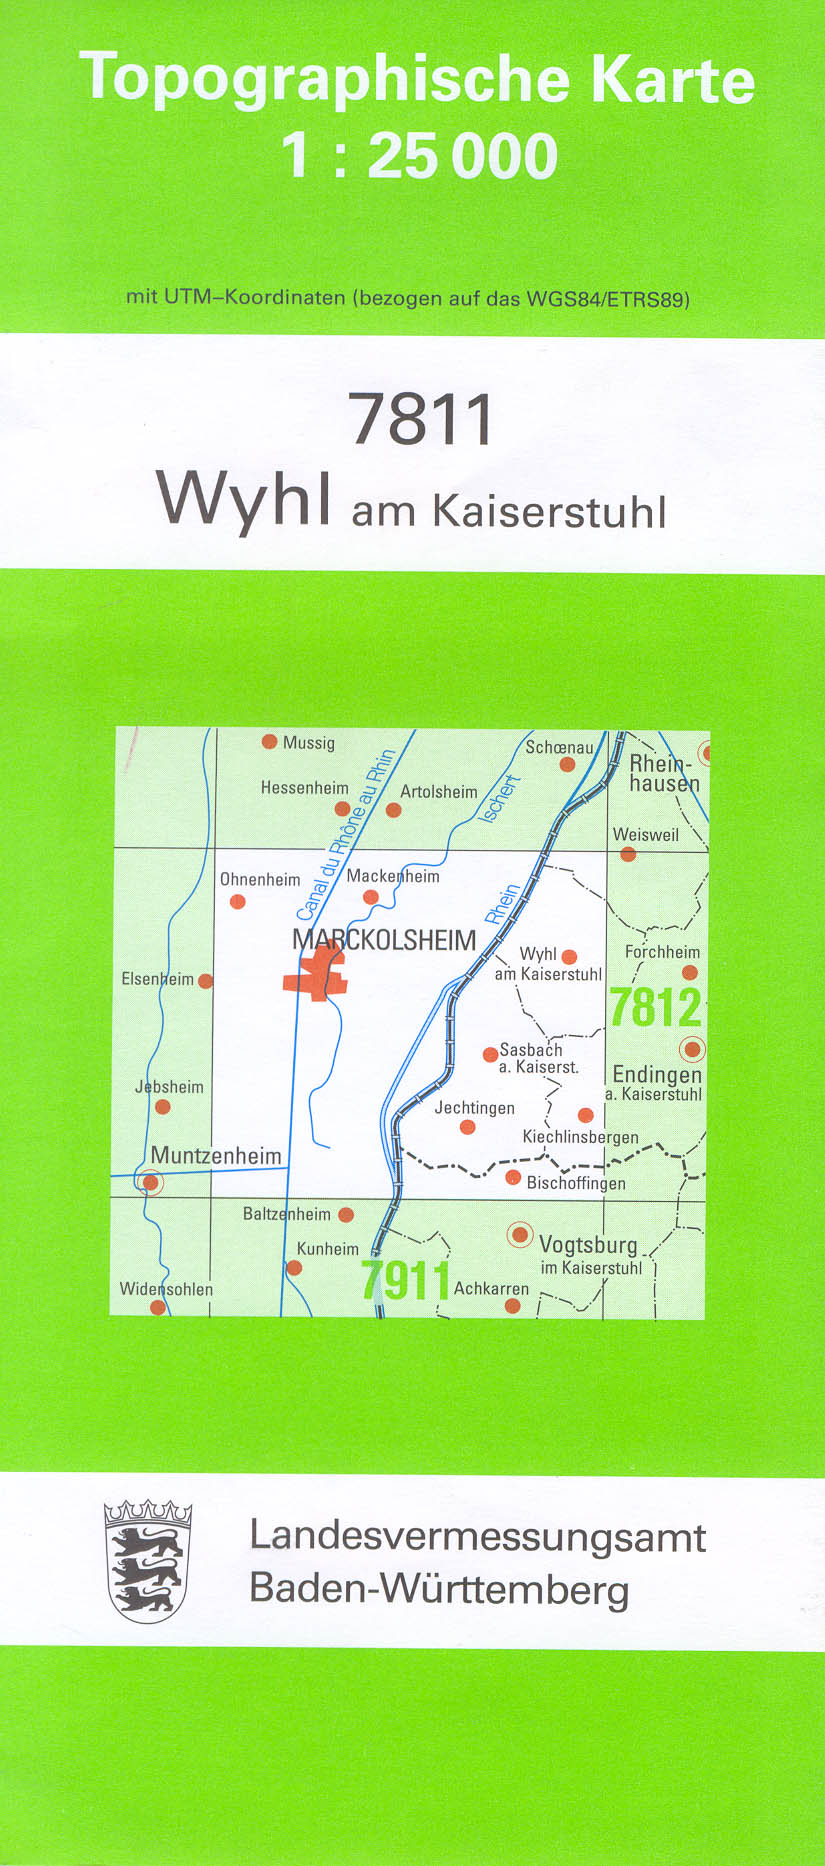 Baden-Württemberg 1:25.000 Topographische Karten Blattnummern 7213 - 7725